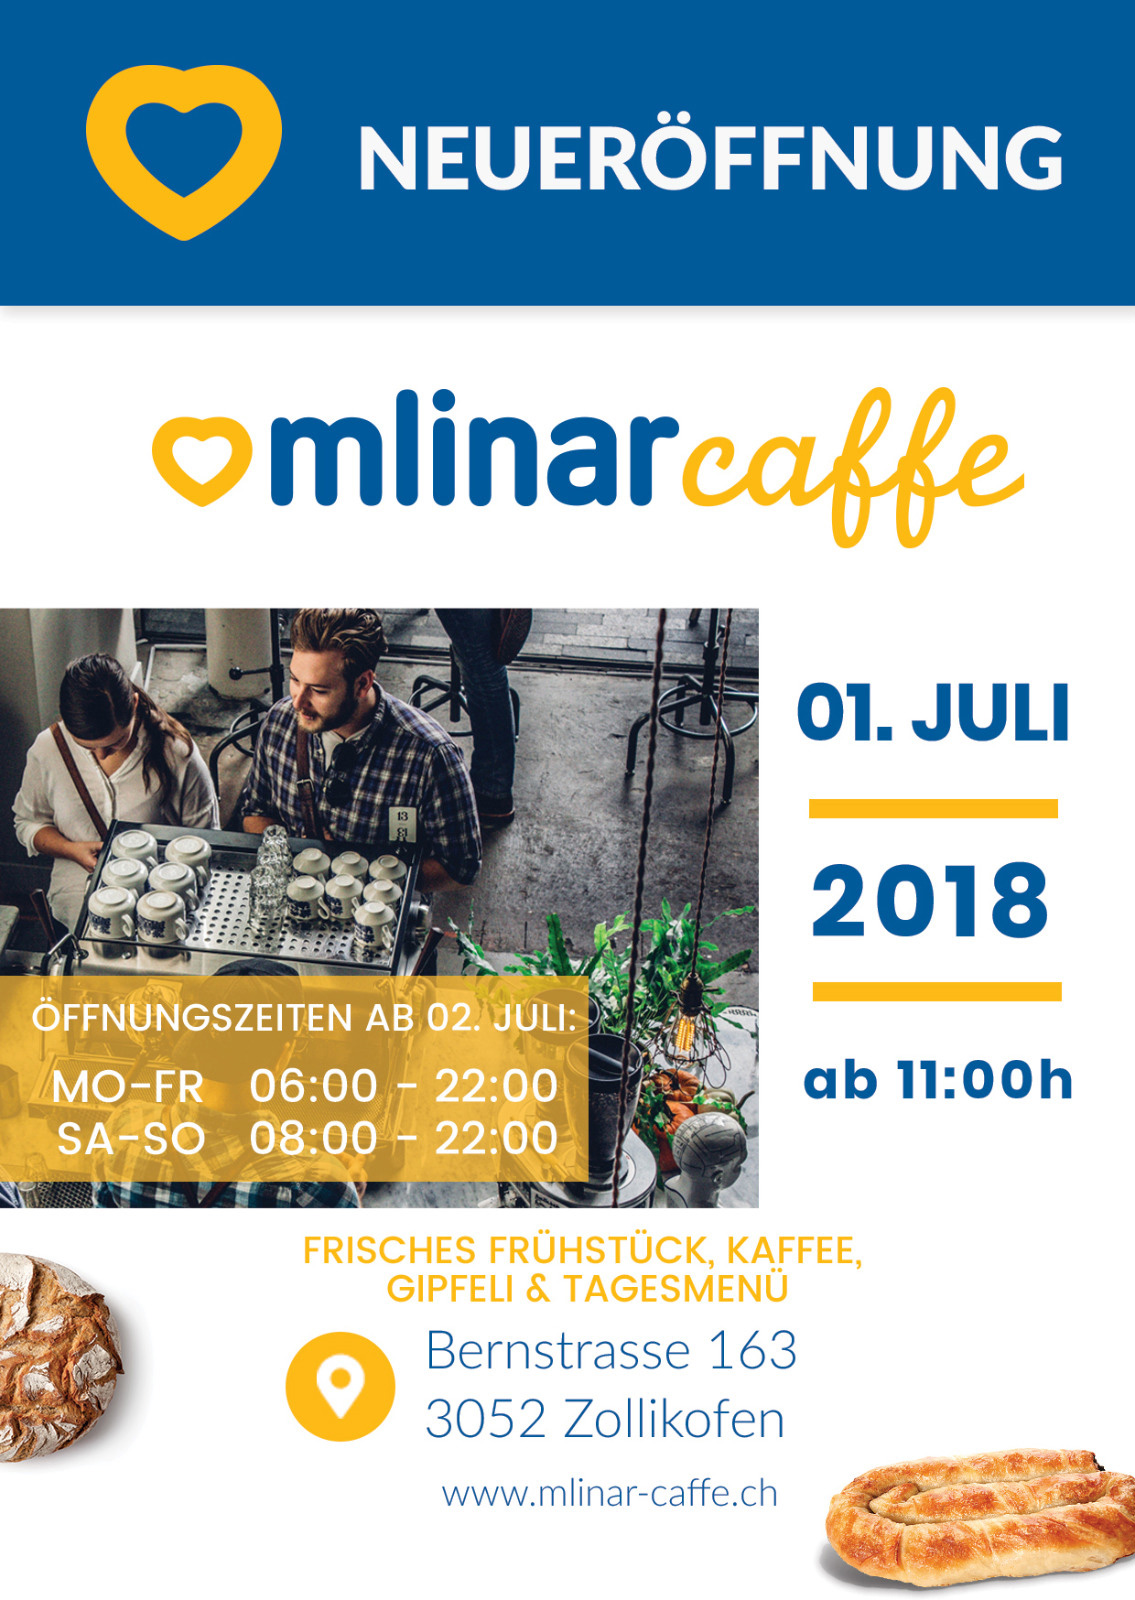 U nedjelju 1. srpnja vrata otvara Mlinar Caffe u Zollikofenu (BE).